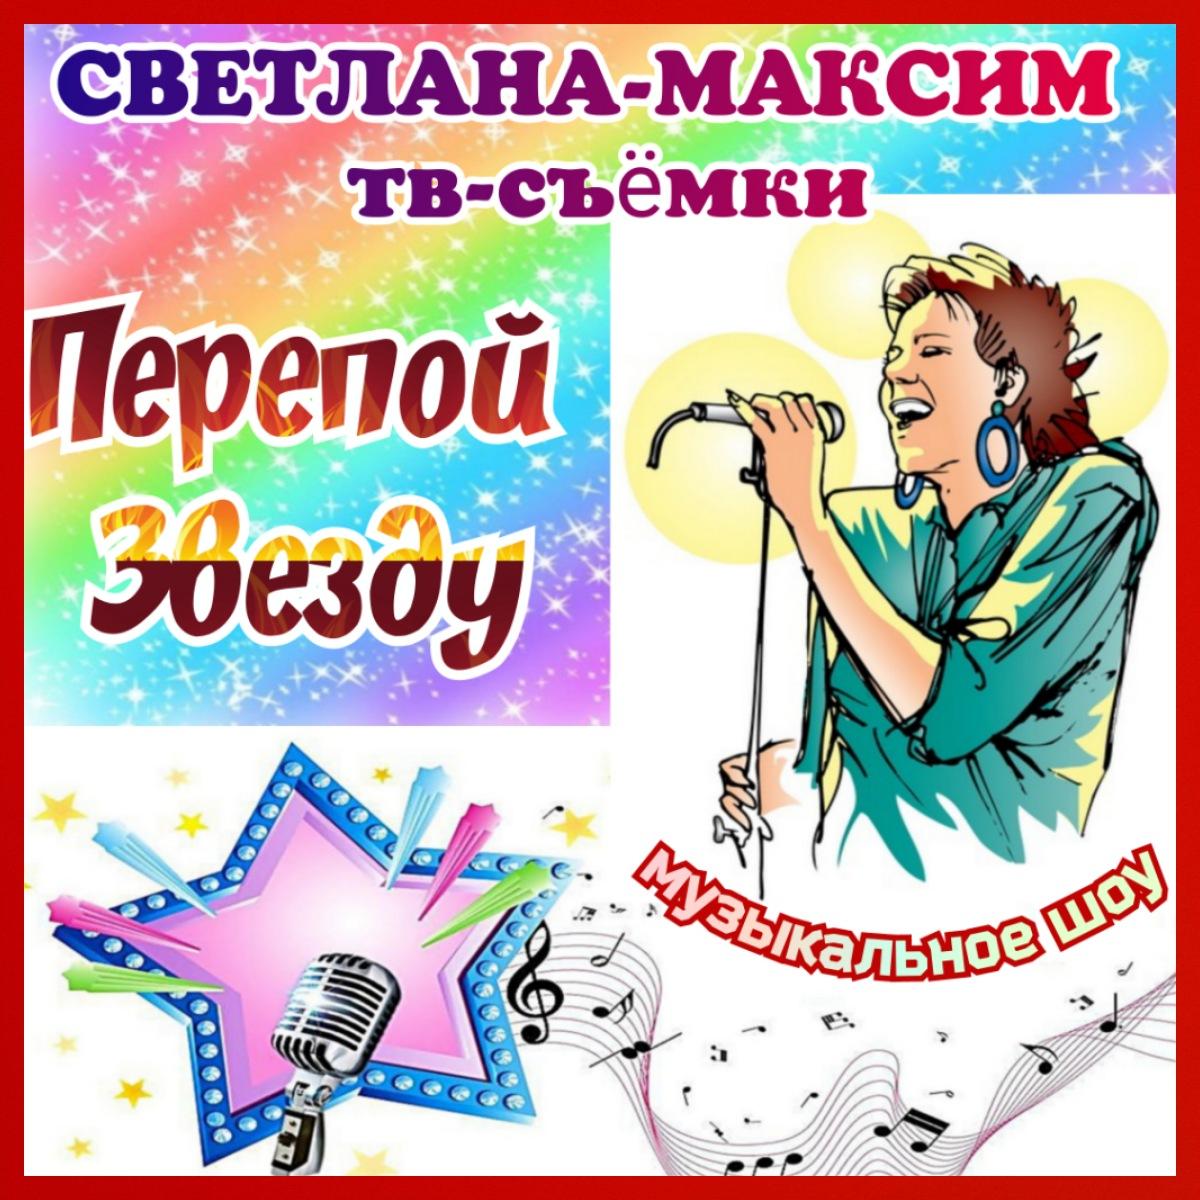 5, 6, 7, 8 июня новое музыкальное шоу "ПЕРЕПОЙ ЗВЕЗДУ".